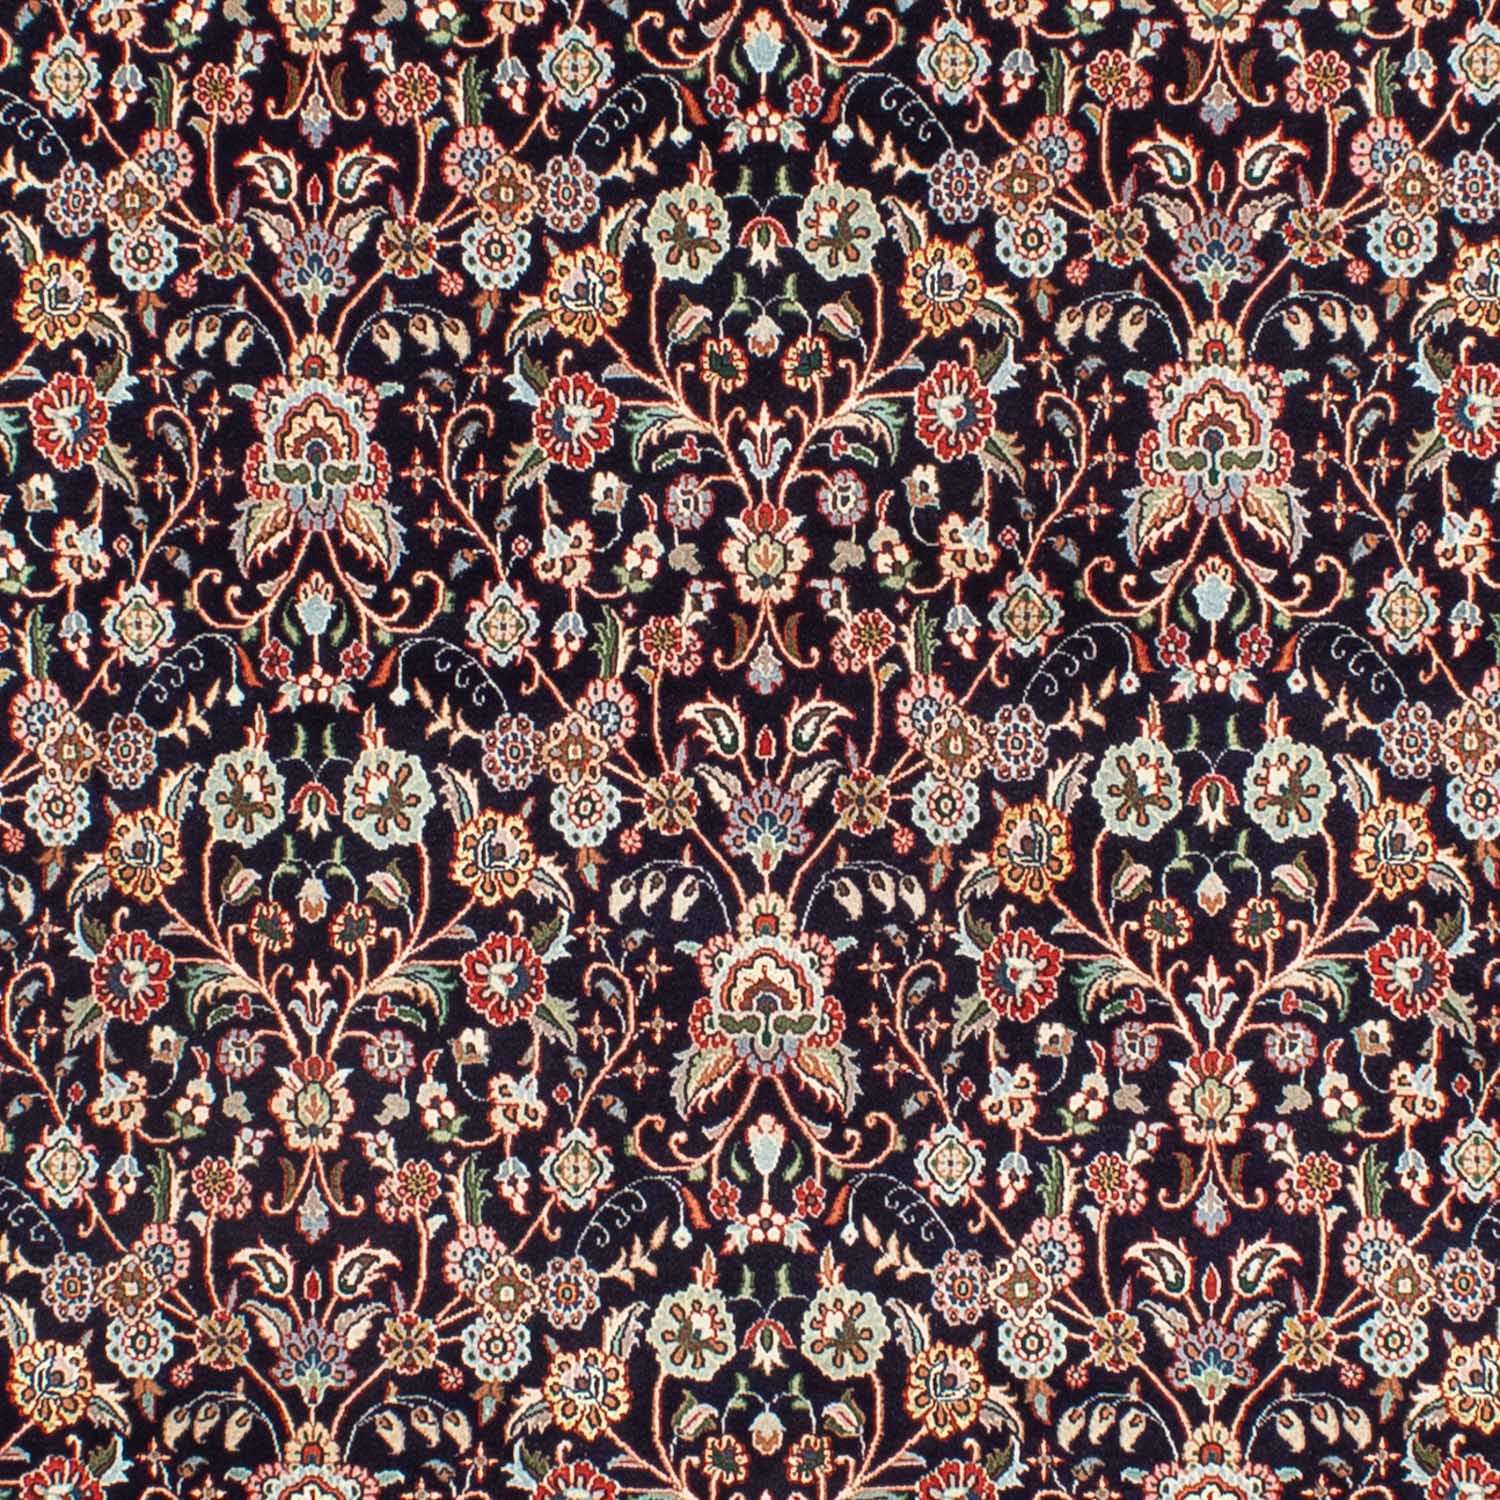 Tapis persan - Classique - 283 x 196 cm - noir